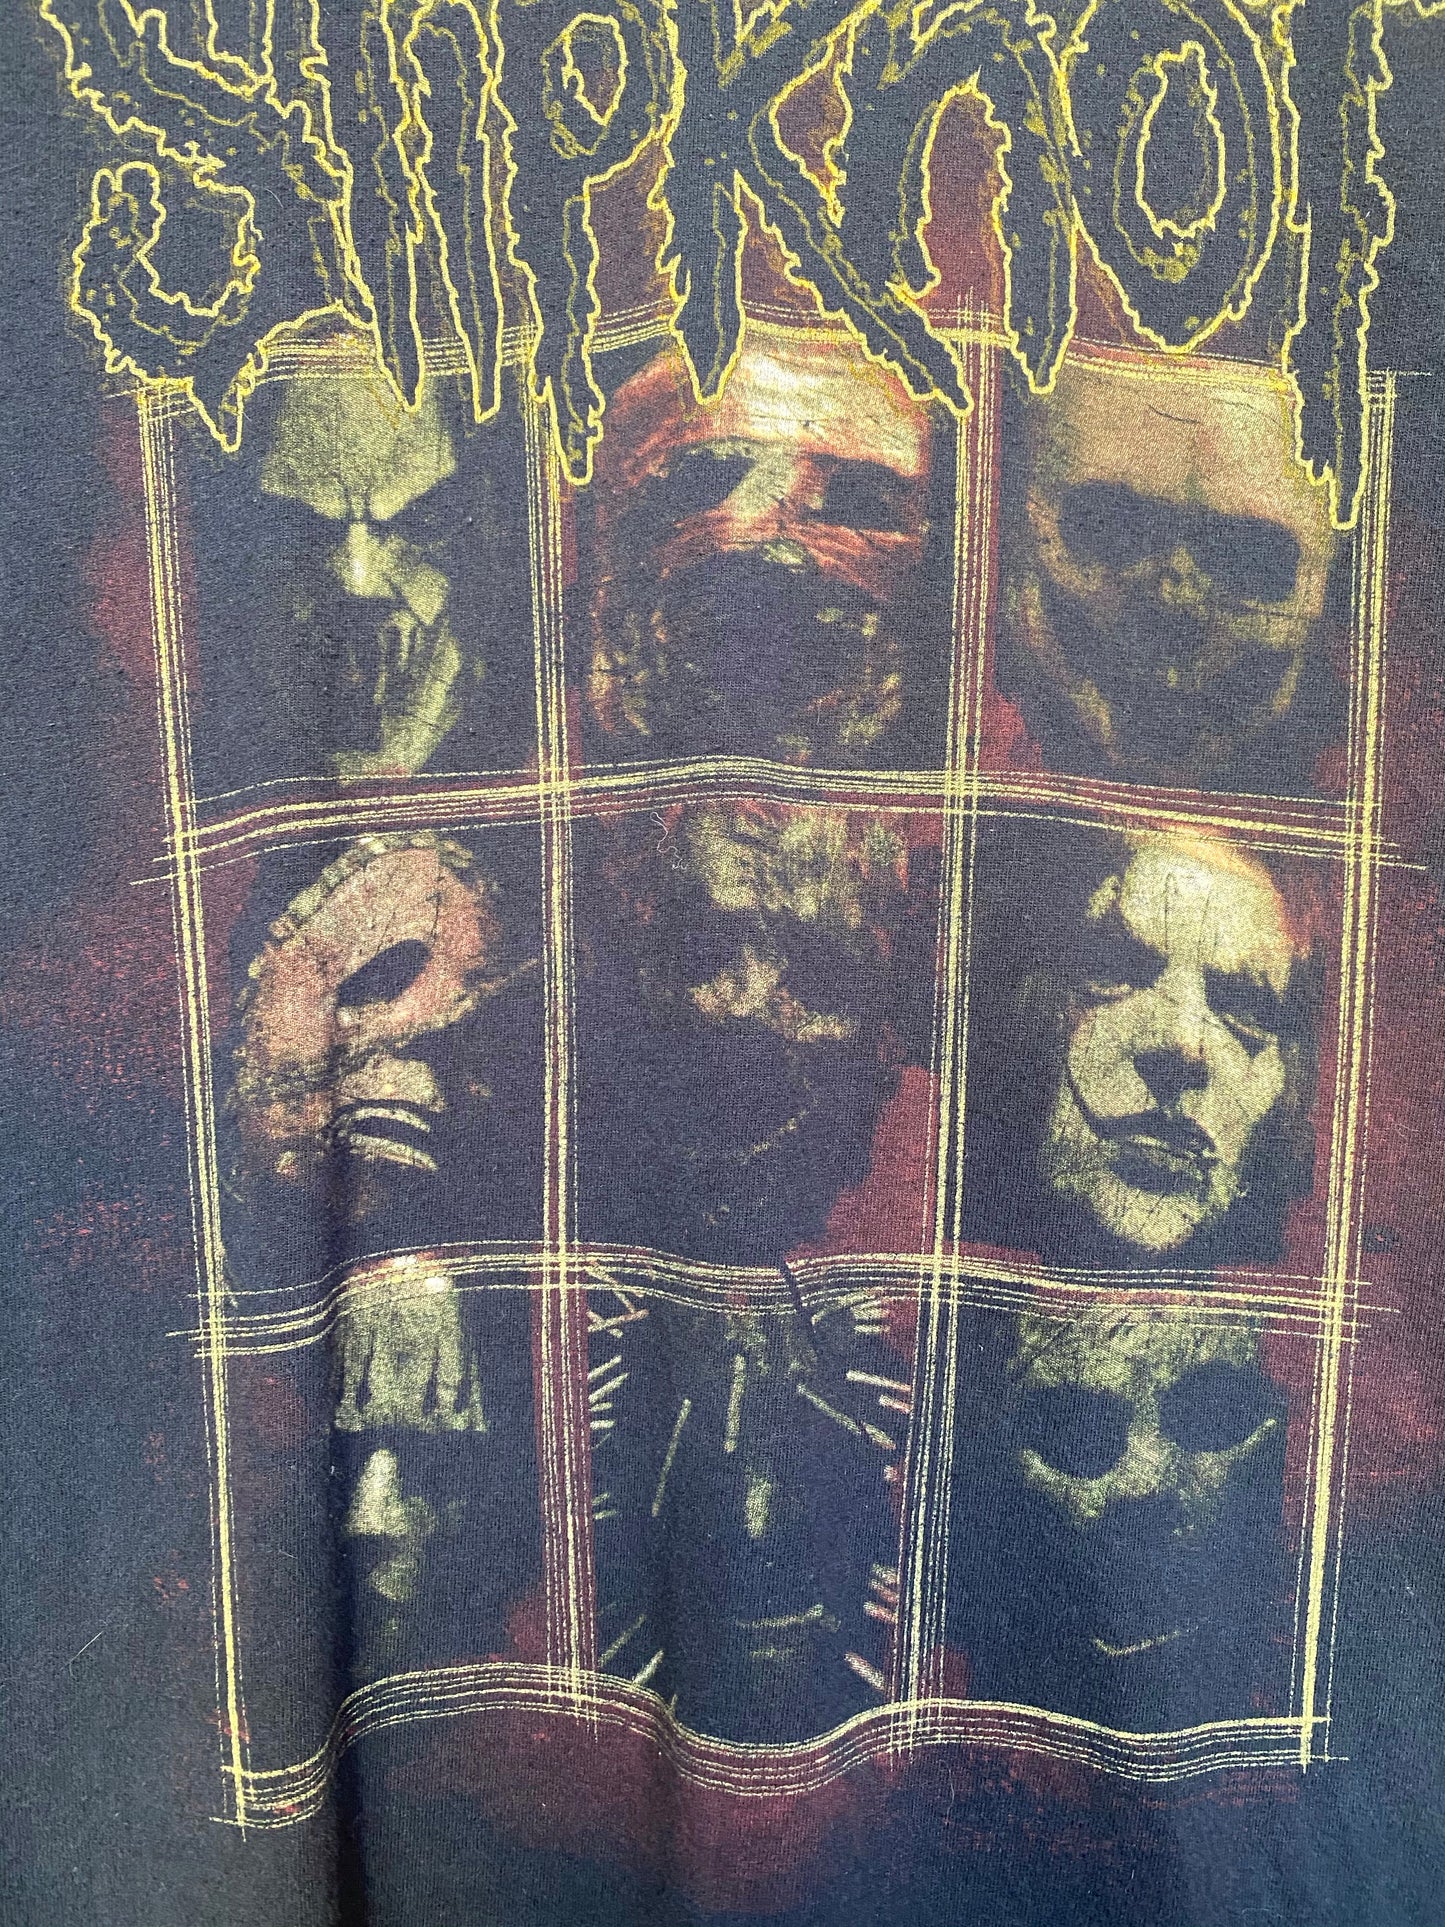 2000’s Slipknot Shirt